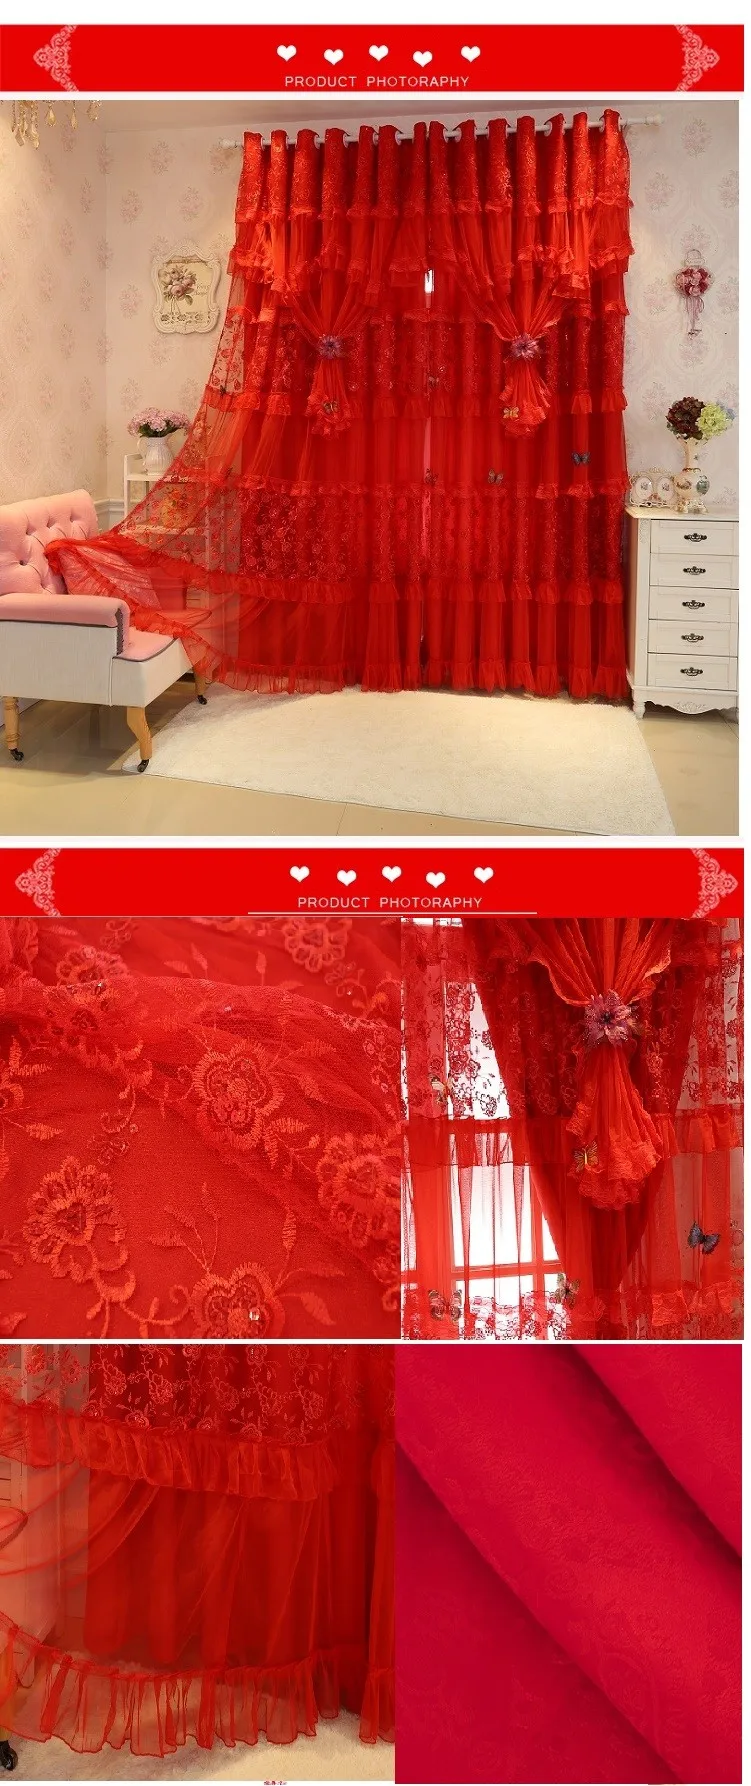 Вышивка Кружево Cortinas роскошный красный Шторы S для гостиной радостной свадьбы плотные Шторы комплект Cortina rideaux Pour le salon